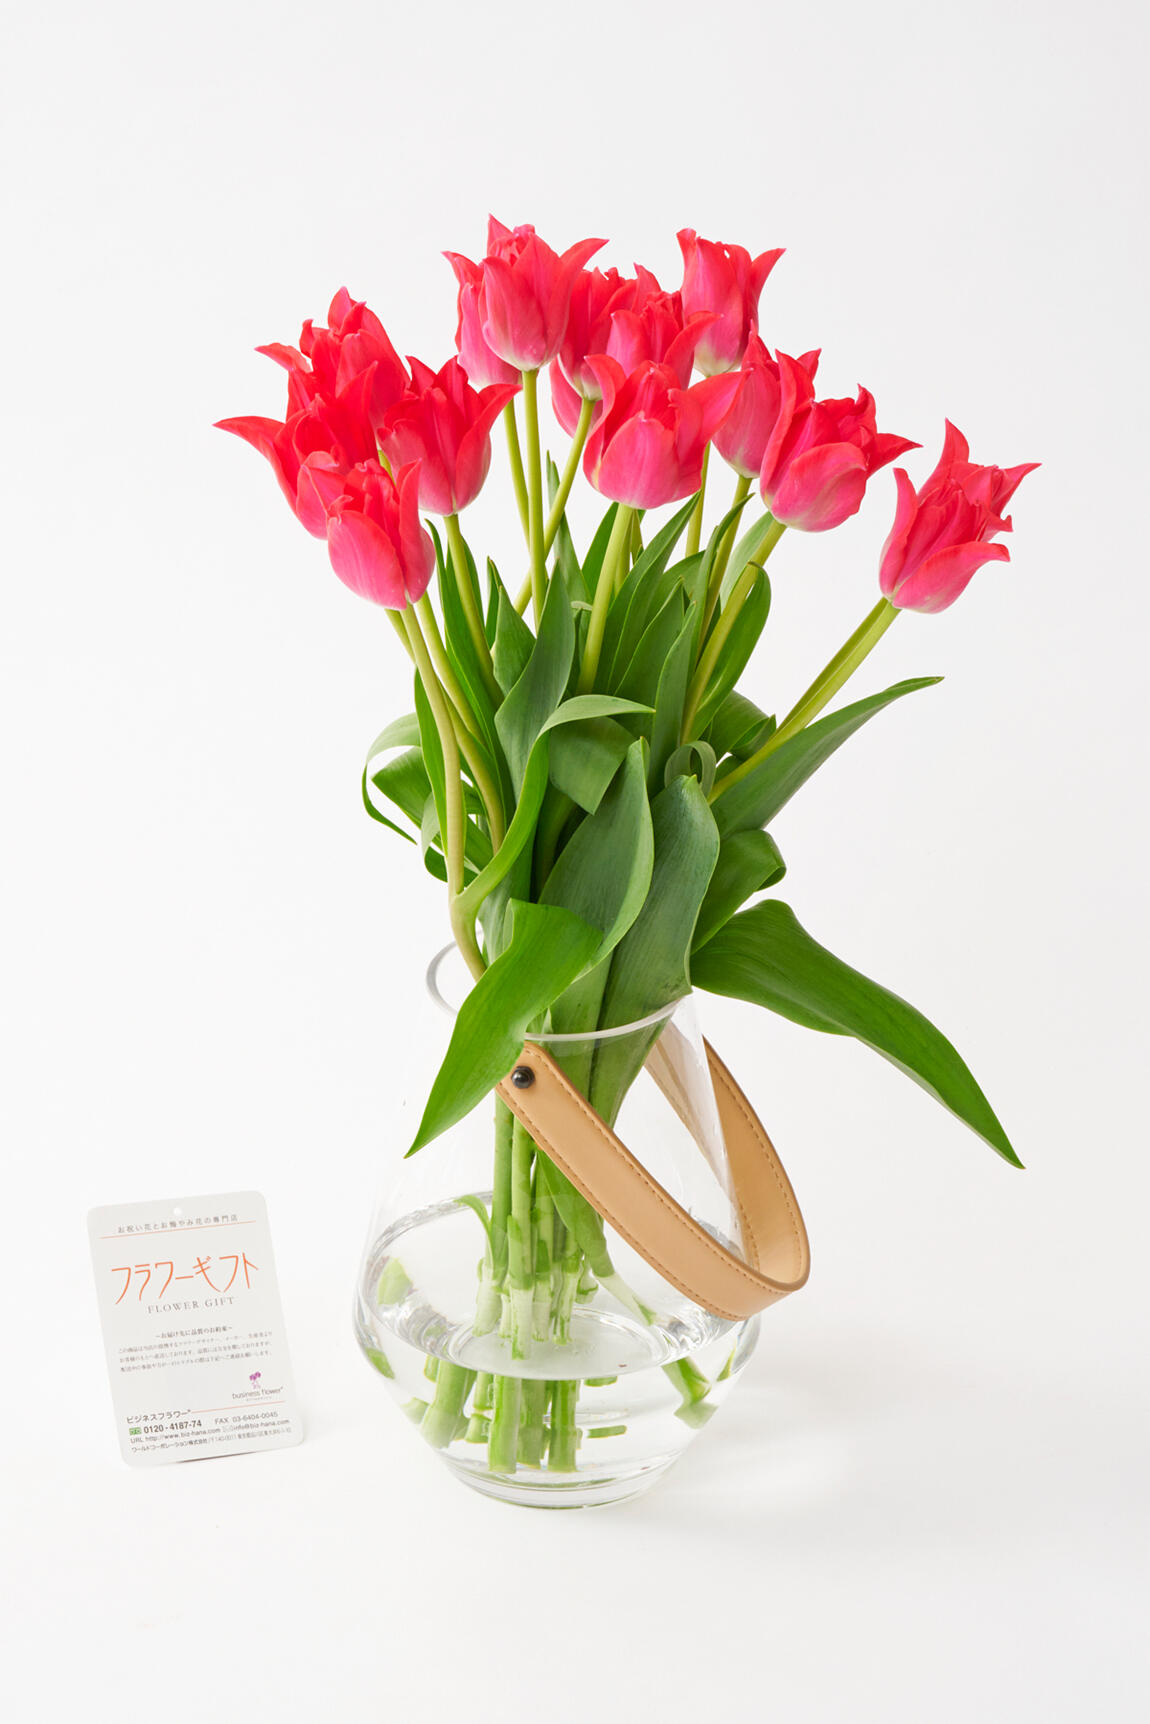 <p>花瓶付きのチューリップの花束は、1月から3月の結婚祝い、昇進祝い、退職される方へのお祝い花としてはもちろん、春の開店祝い、移転祝いなどの贈答花としてもおすすめしたい花ギフトです。</p>